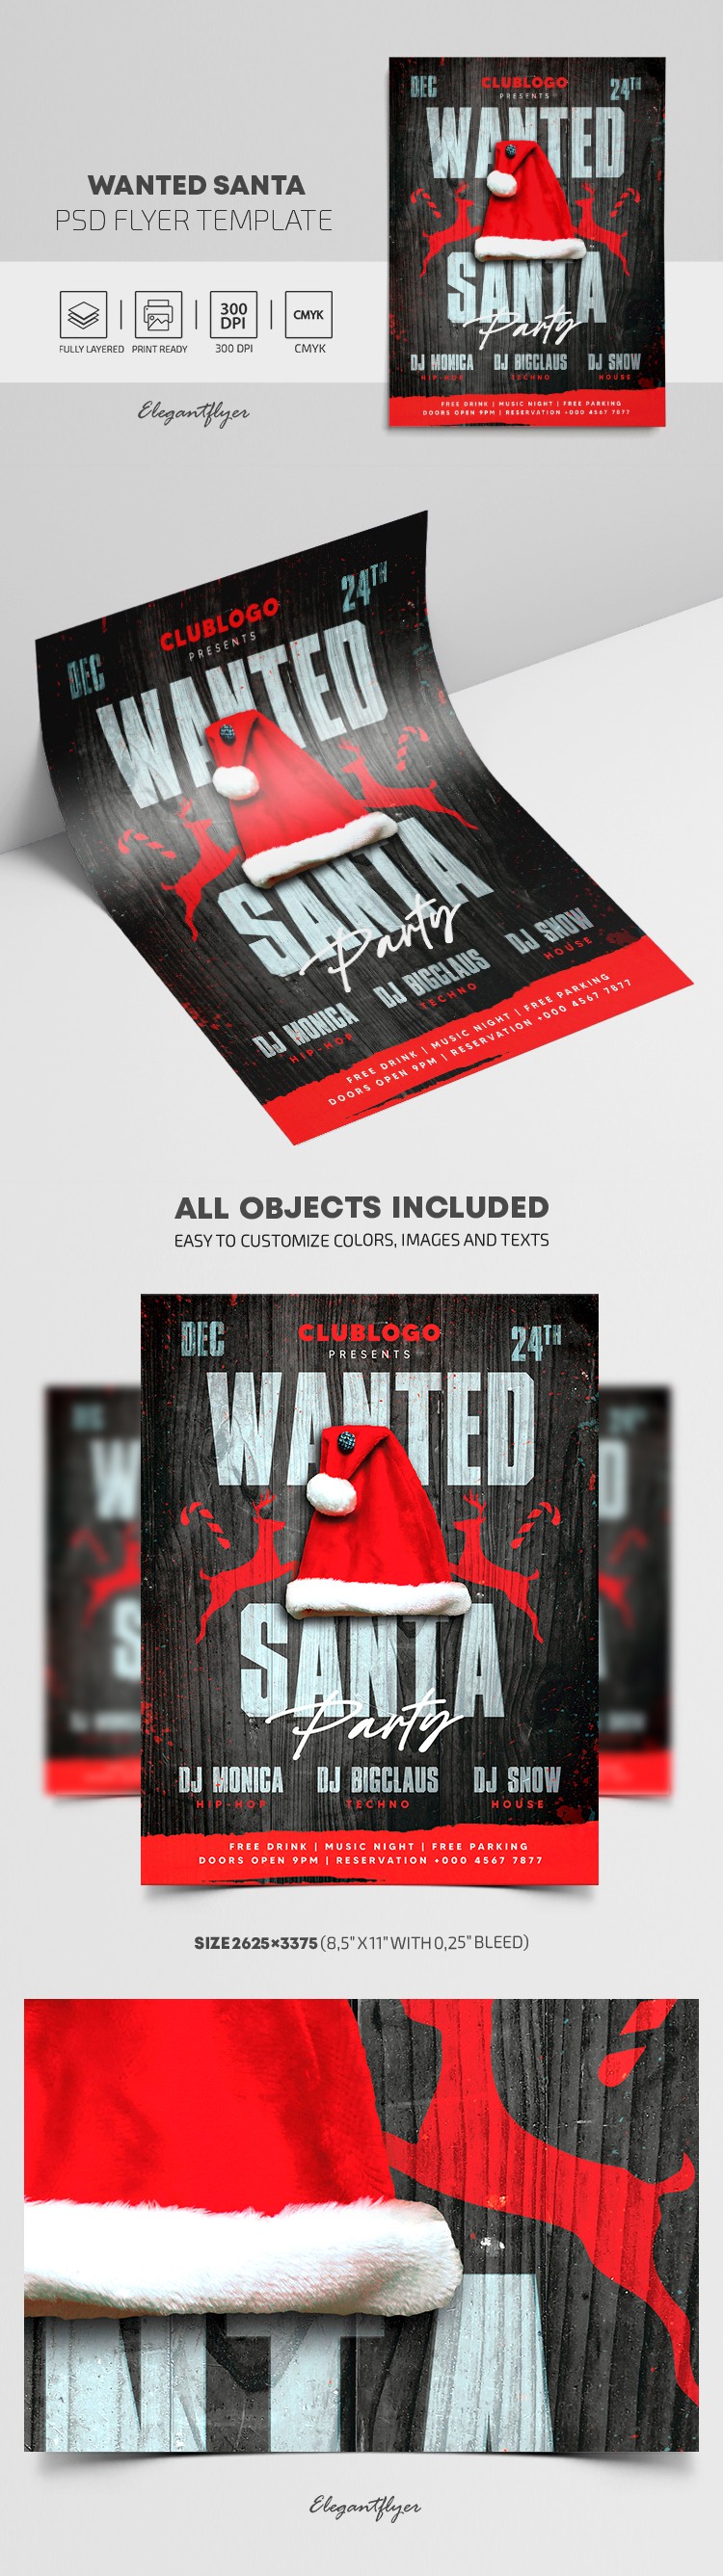 Wanted Santa Flyer by ElegantFlyer